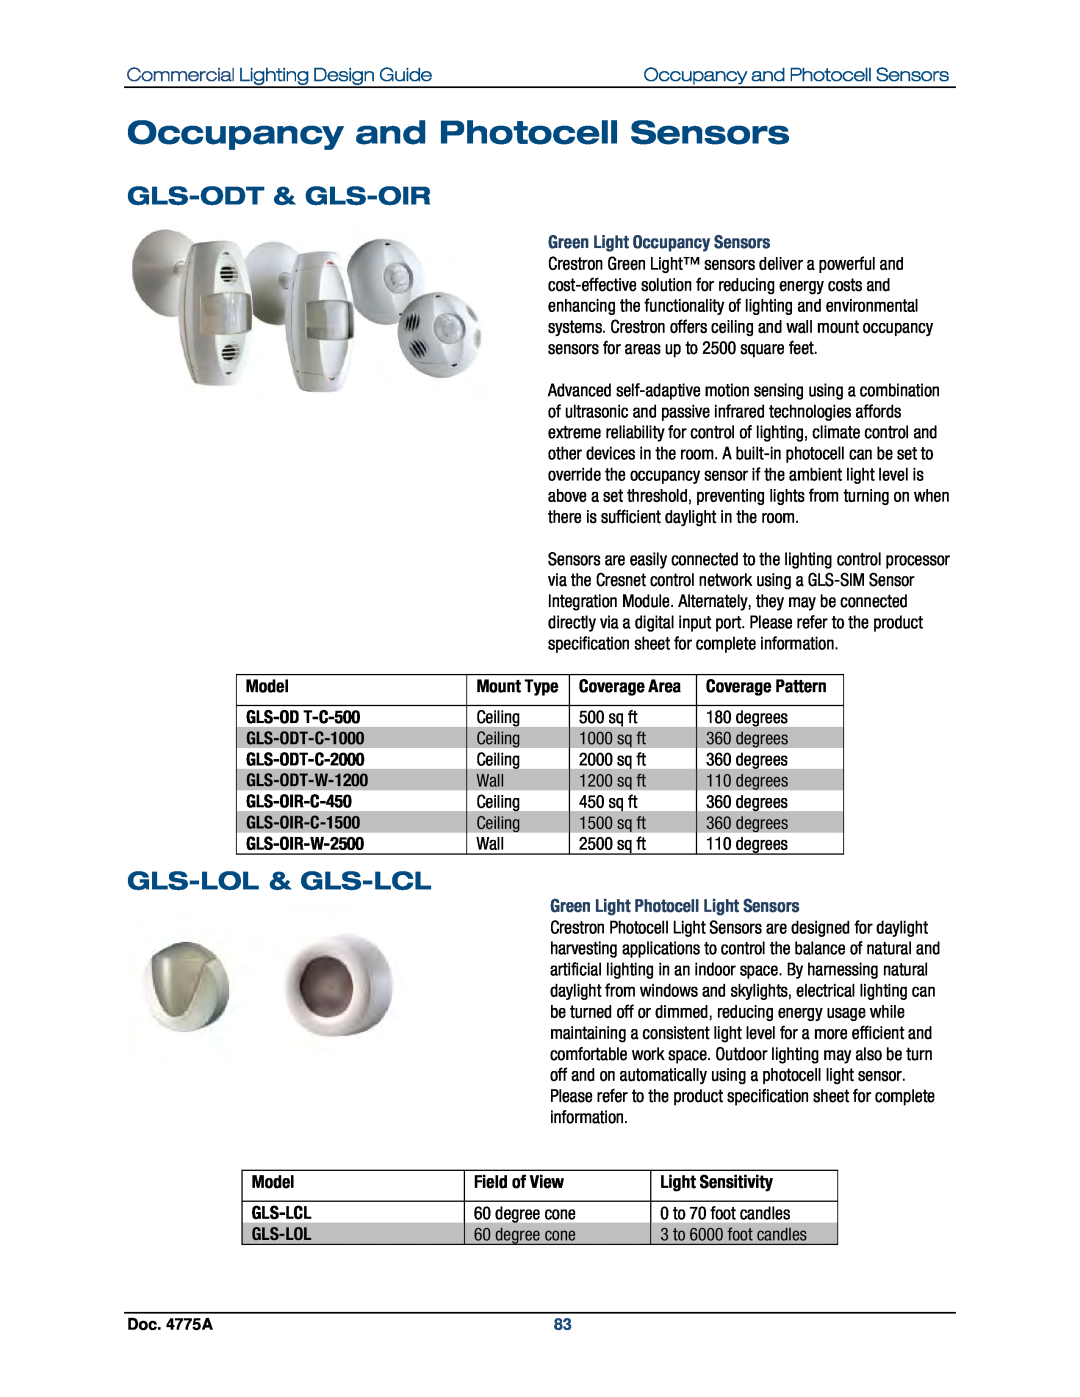 Crestron electronic GLPS-HSW Occupancy and Photocell Sensors, Gls-Odt& Gls-Oir, Gls-Lol& Gls-Lcl, GLS-OD T-C-500, Model 